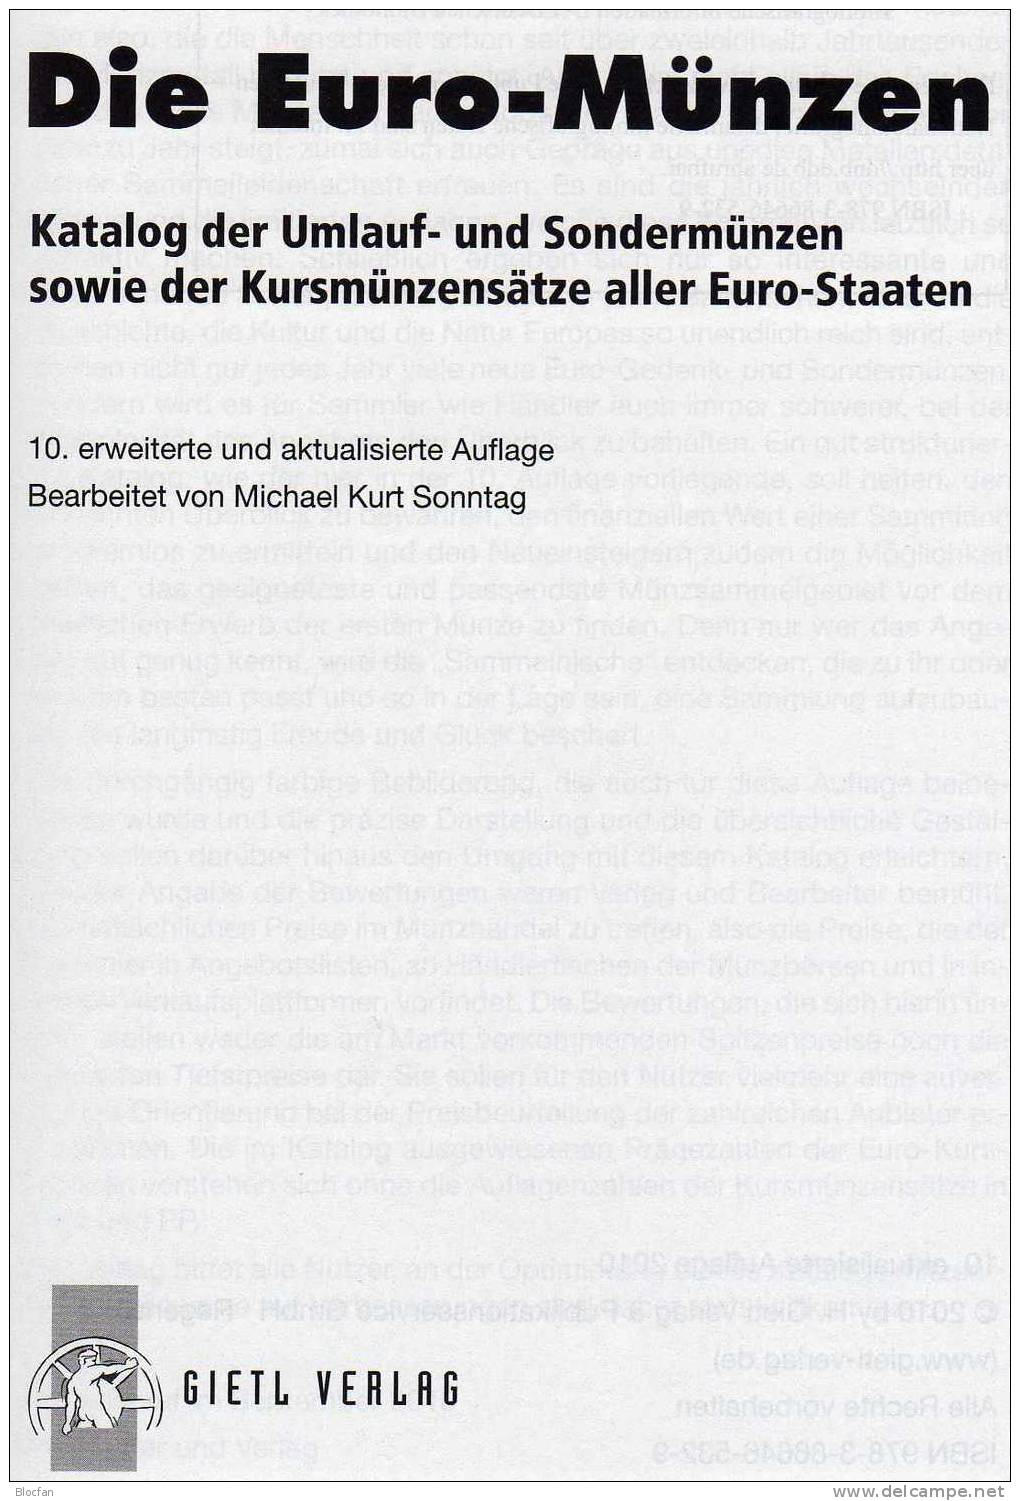 Die EURO-Münzen Katalog 2011 Neu 20€ Deutschland Und Euroländer Für Numis-Briefe, Numisblätter Neueste Auflage Von Gietl - Cyprus